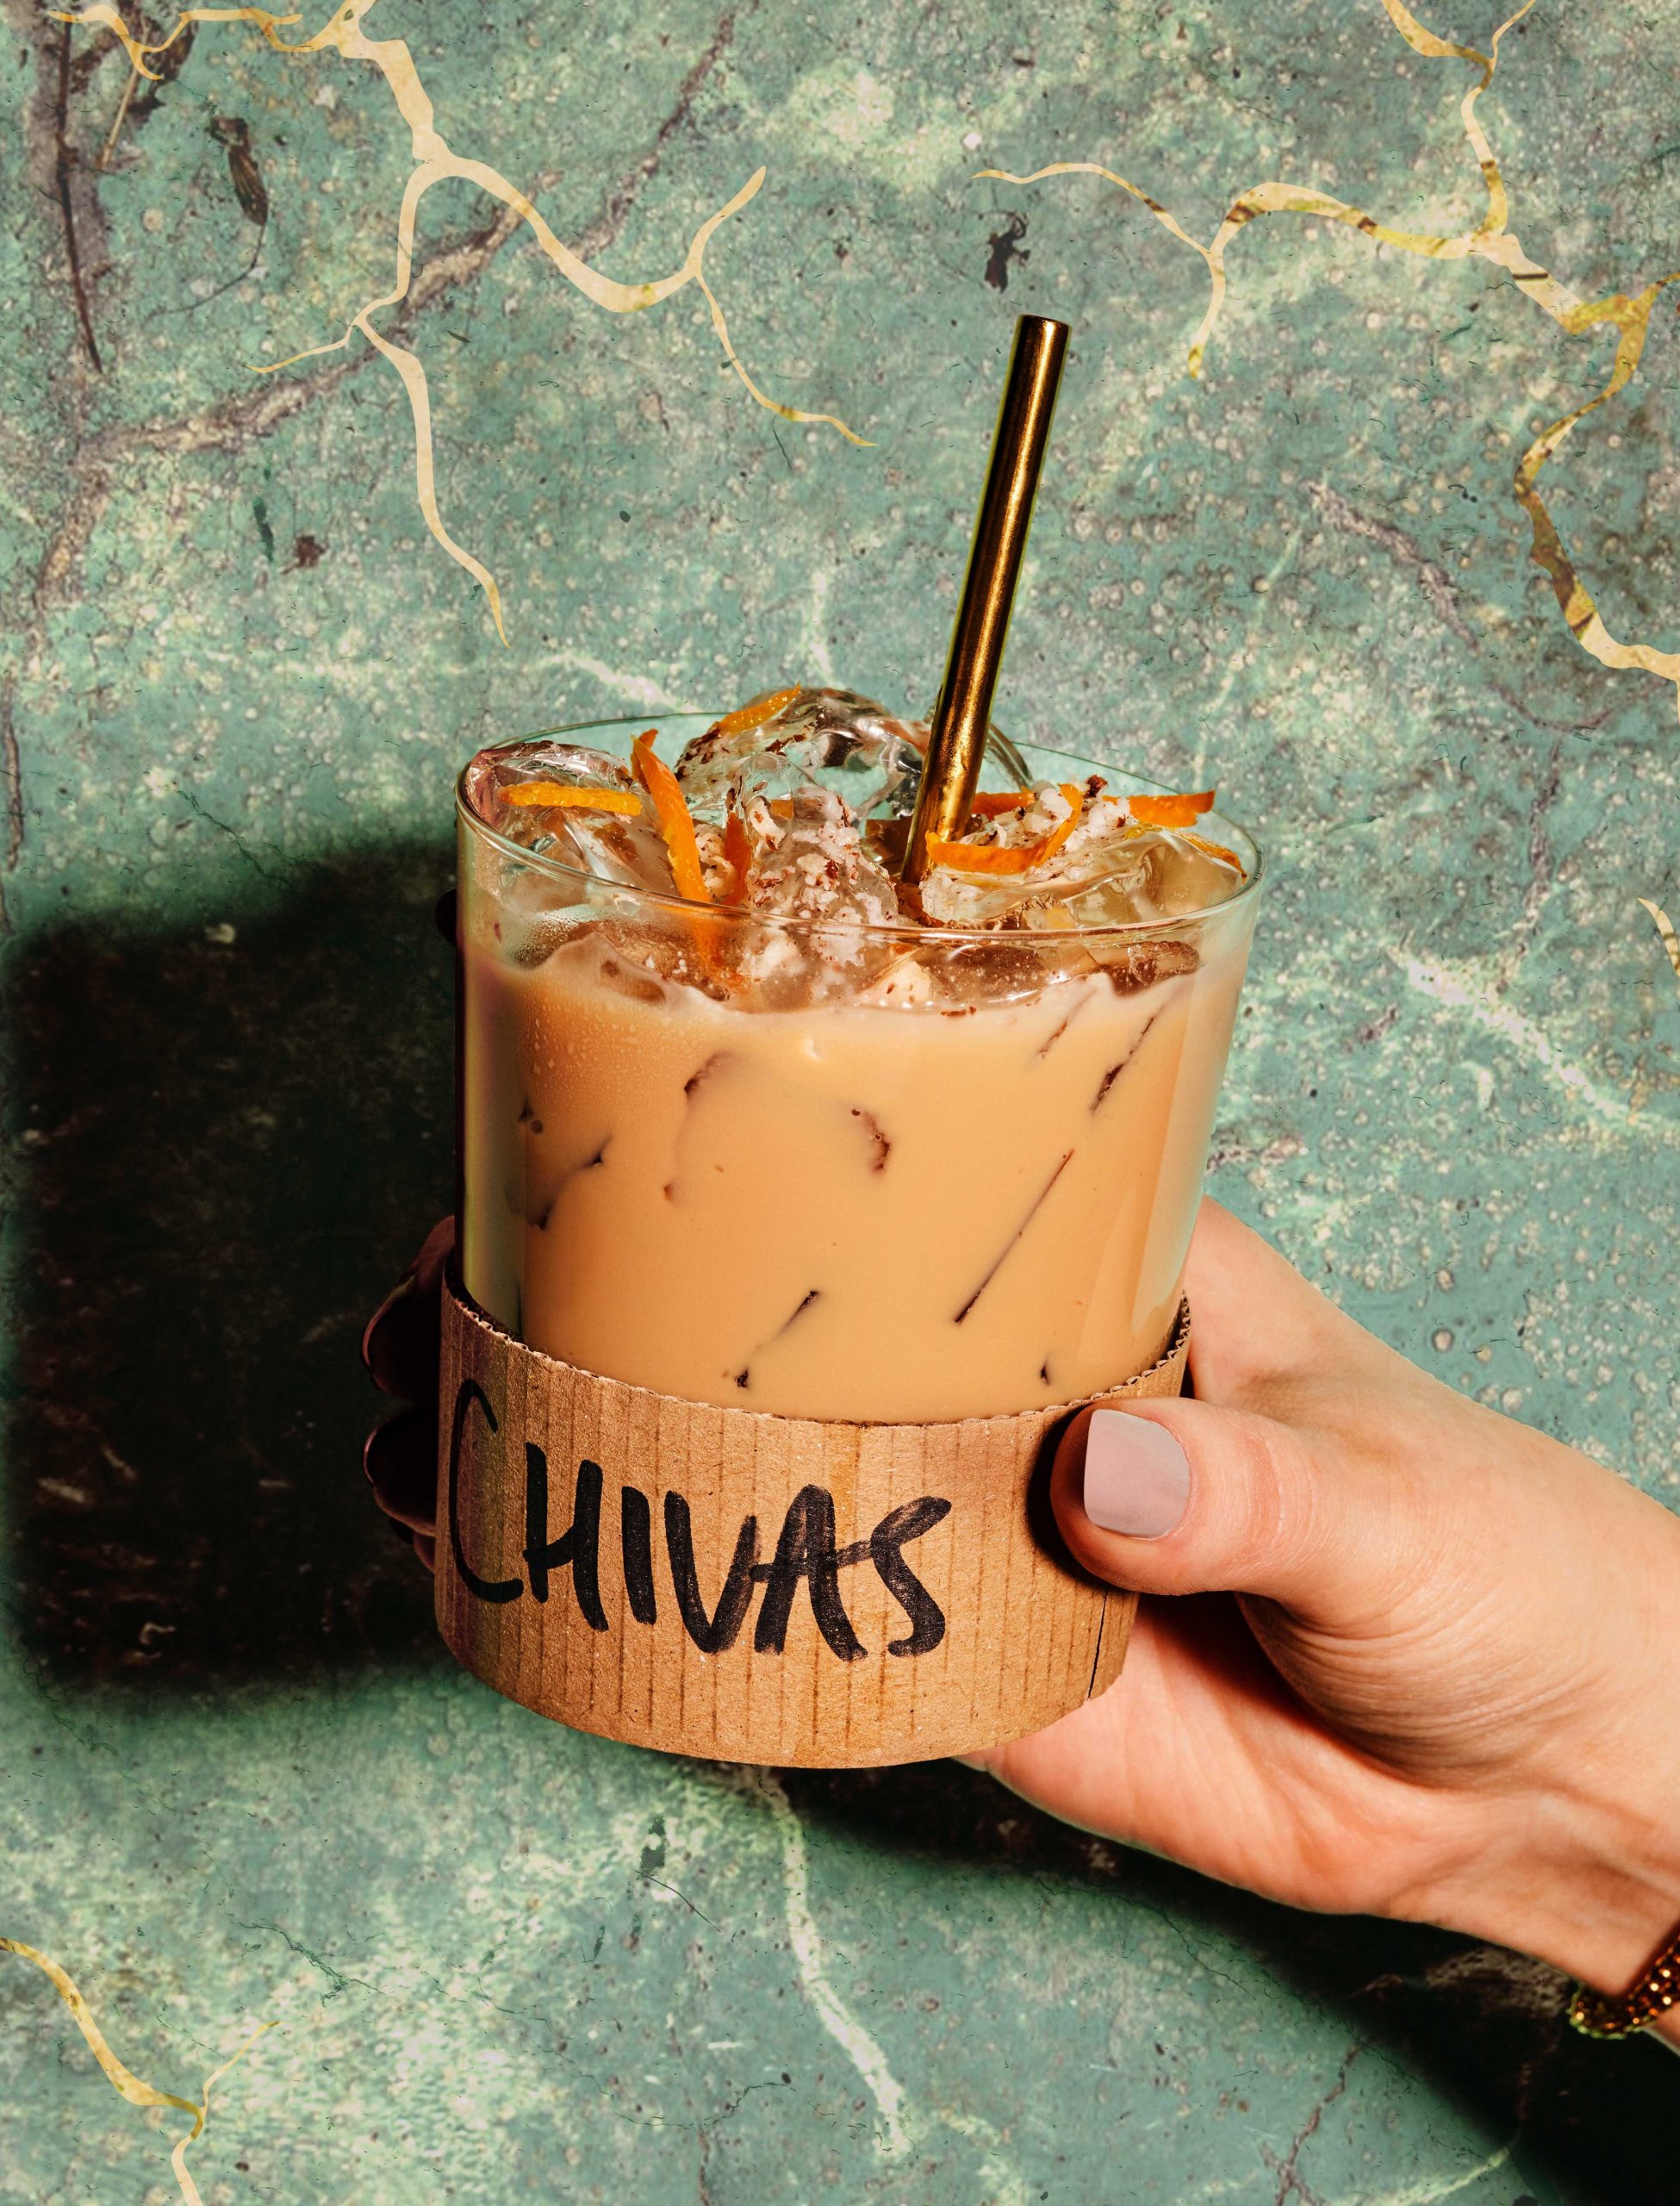 Chivas Mizunara Iced Coffee